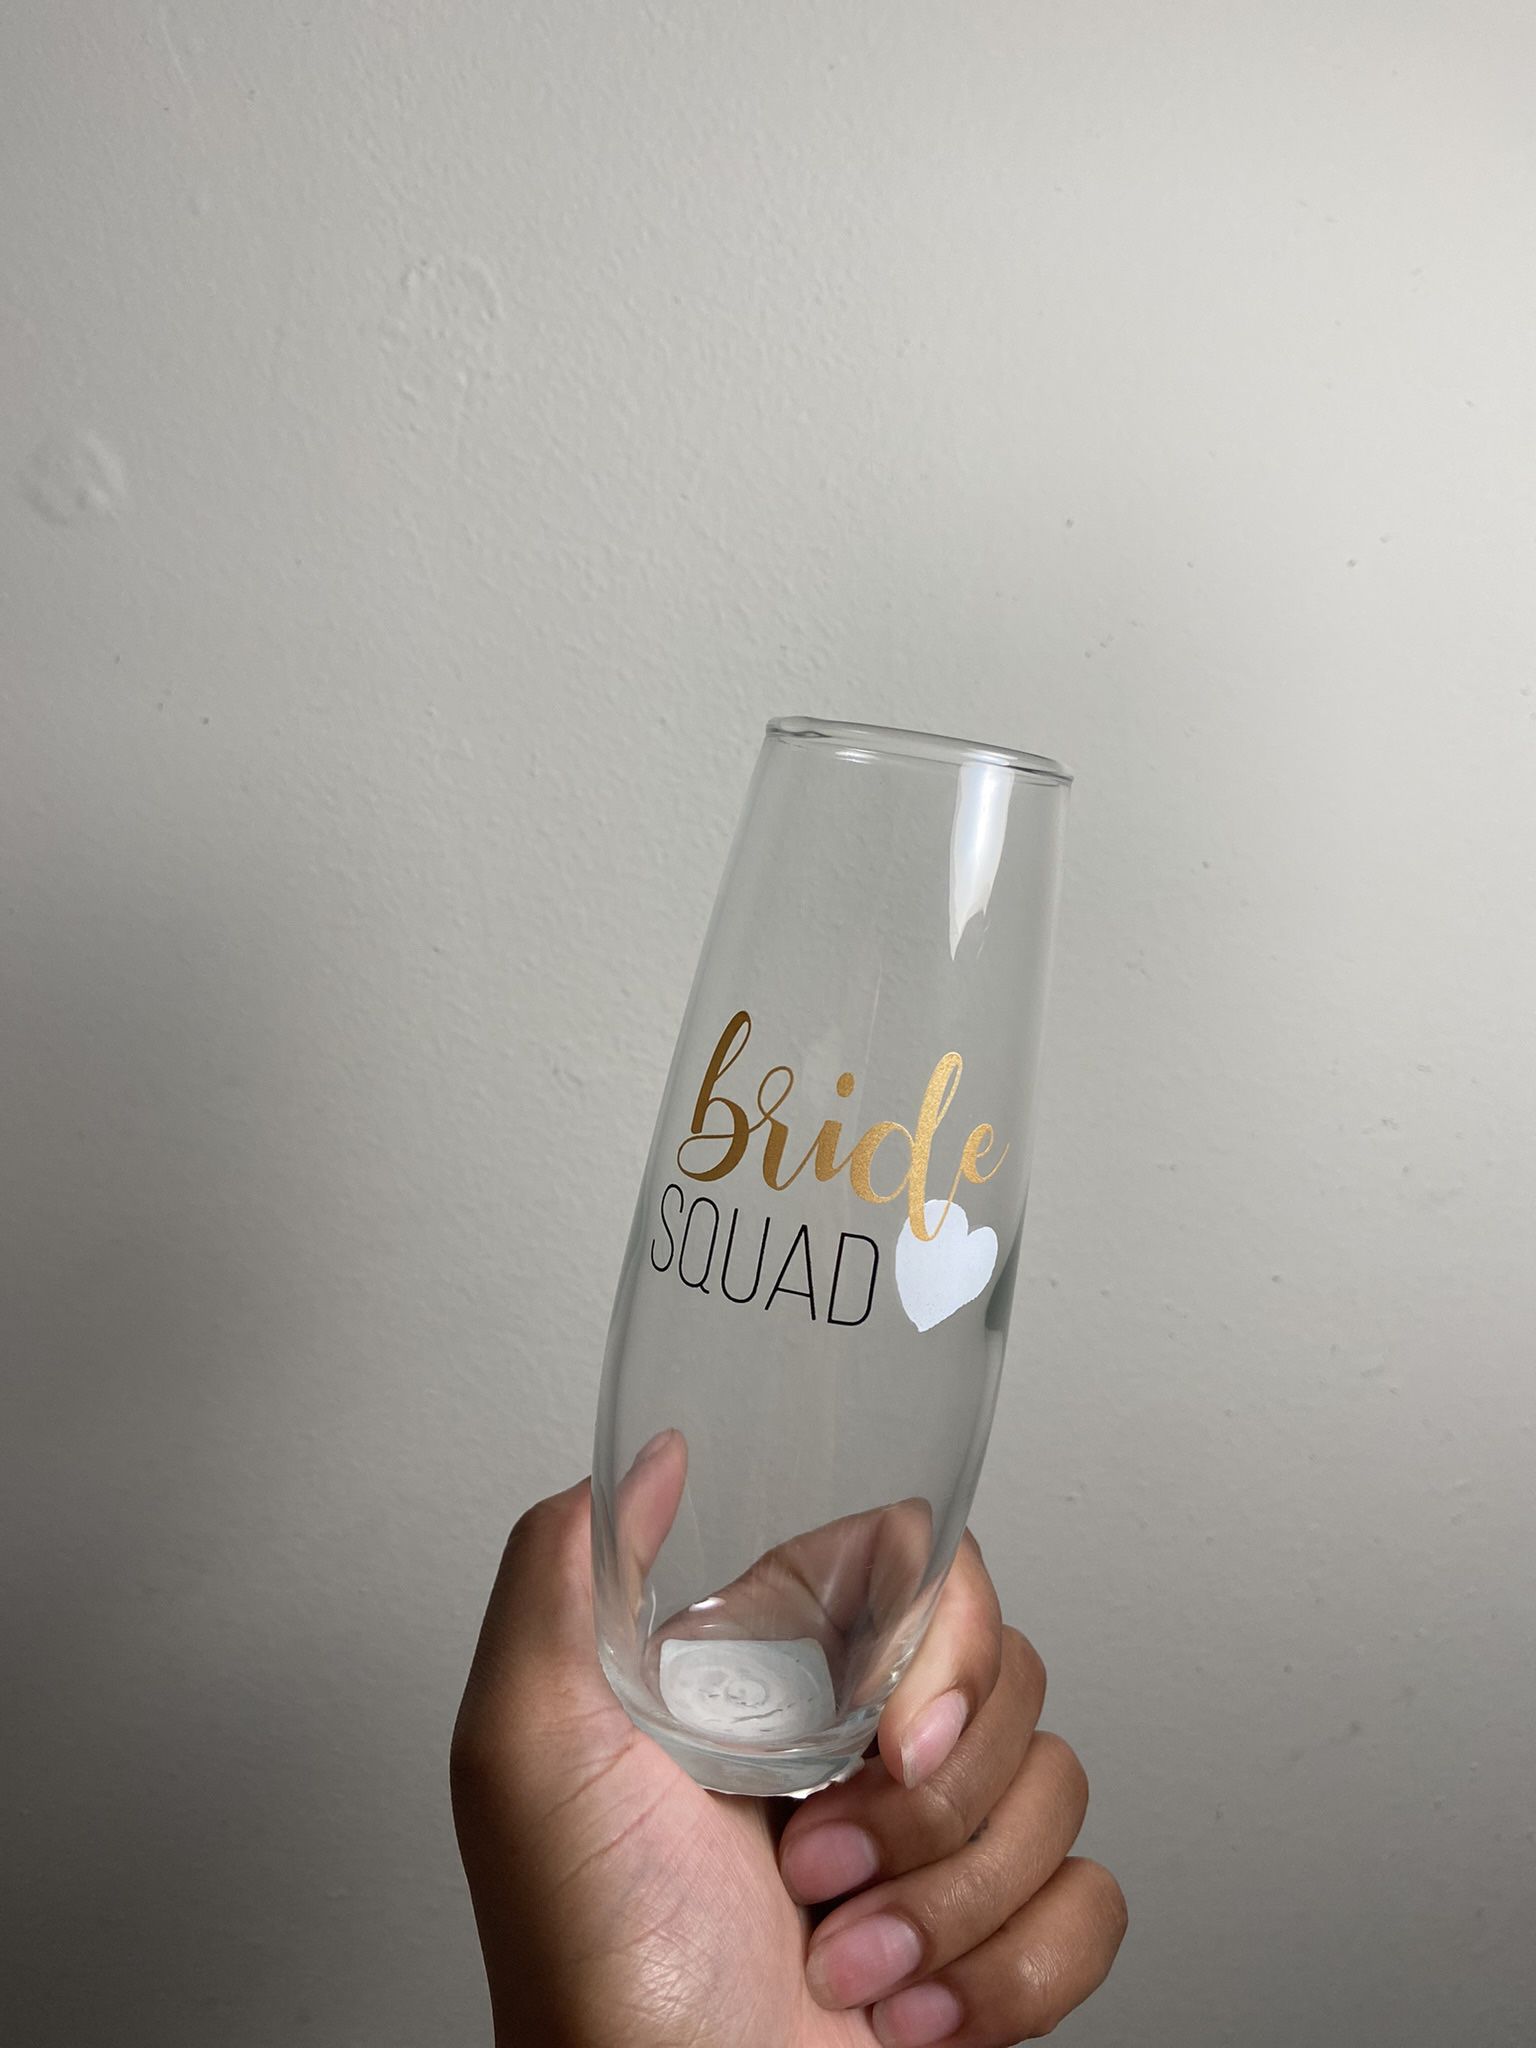 ‘Bride Squad’ champagne glasses